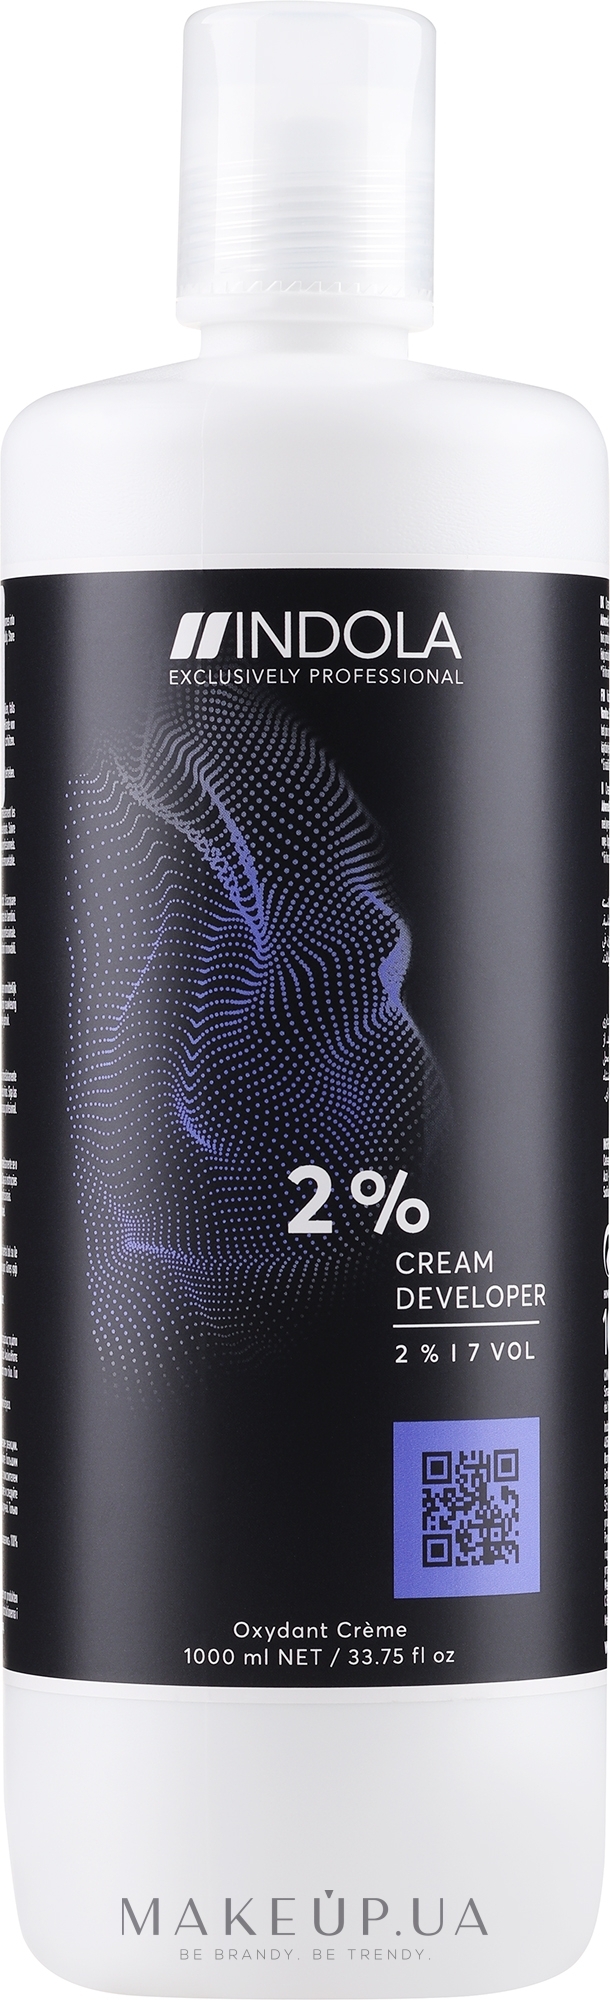 Крем-проявник 2% - 7 vol - Indola Profession Cream Developer 2% - vol 7 — фото 1000ml